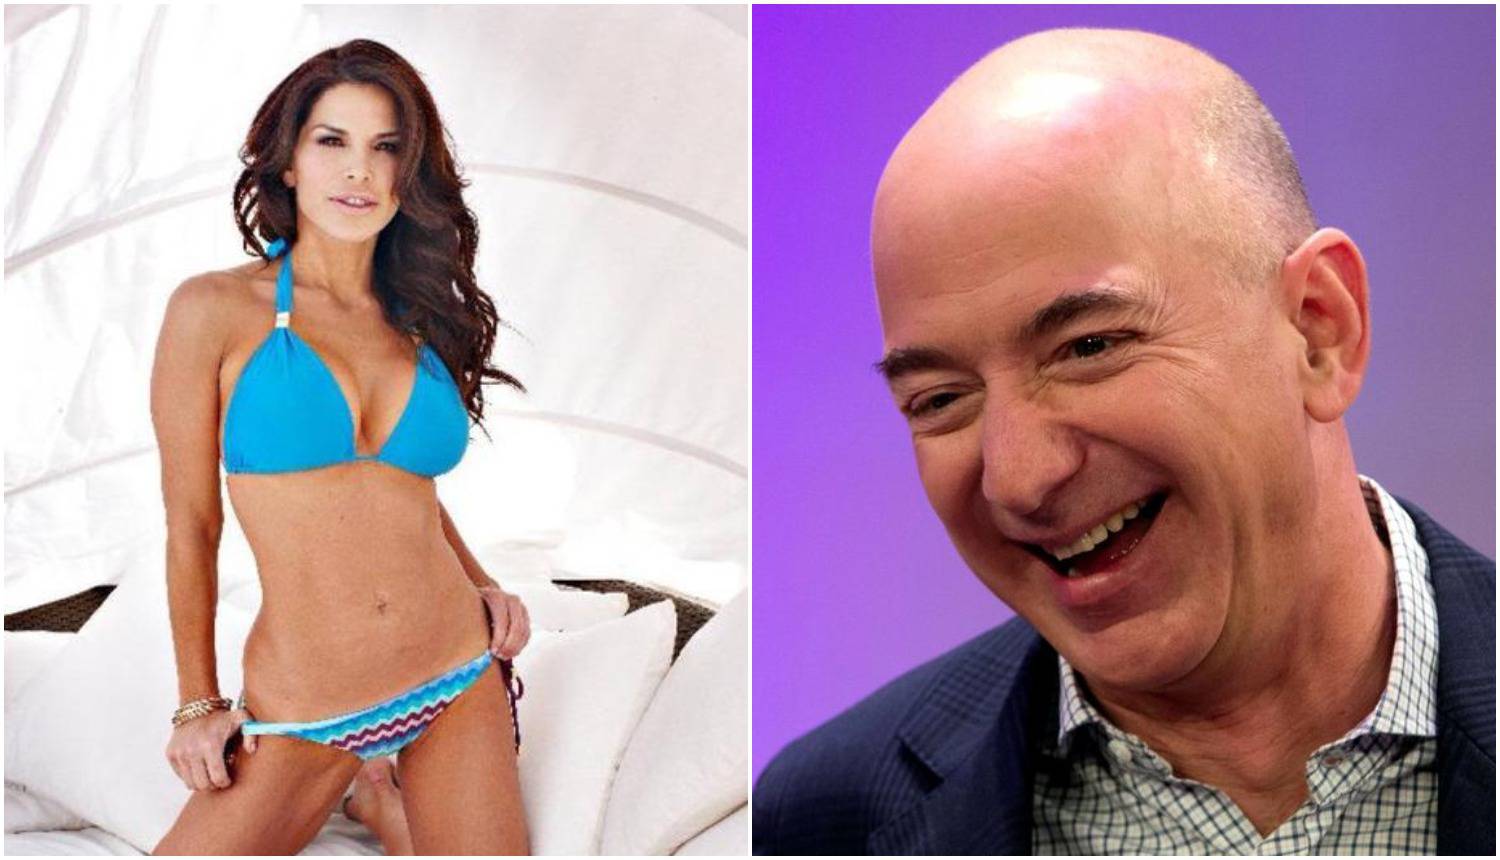 Jeff Bezos: Velik je i još natiče. Ne bi bio baš nježan prema tebi